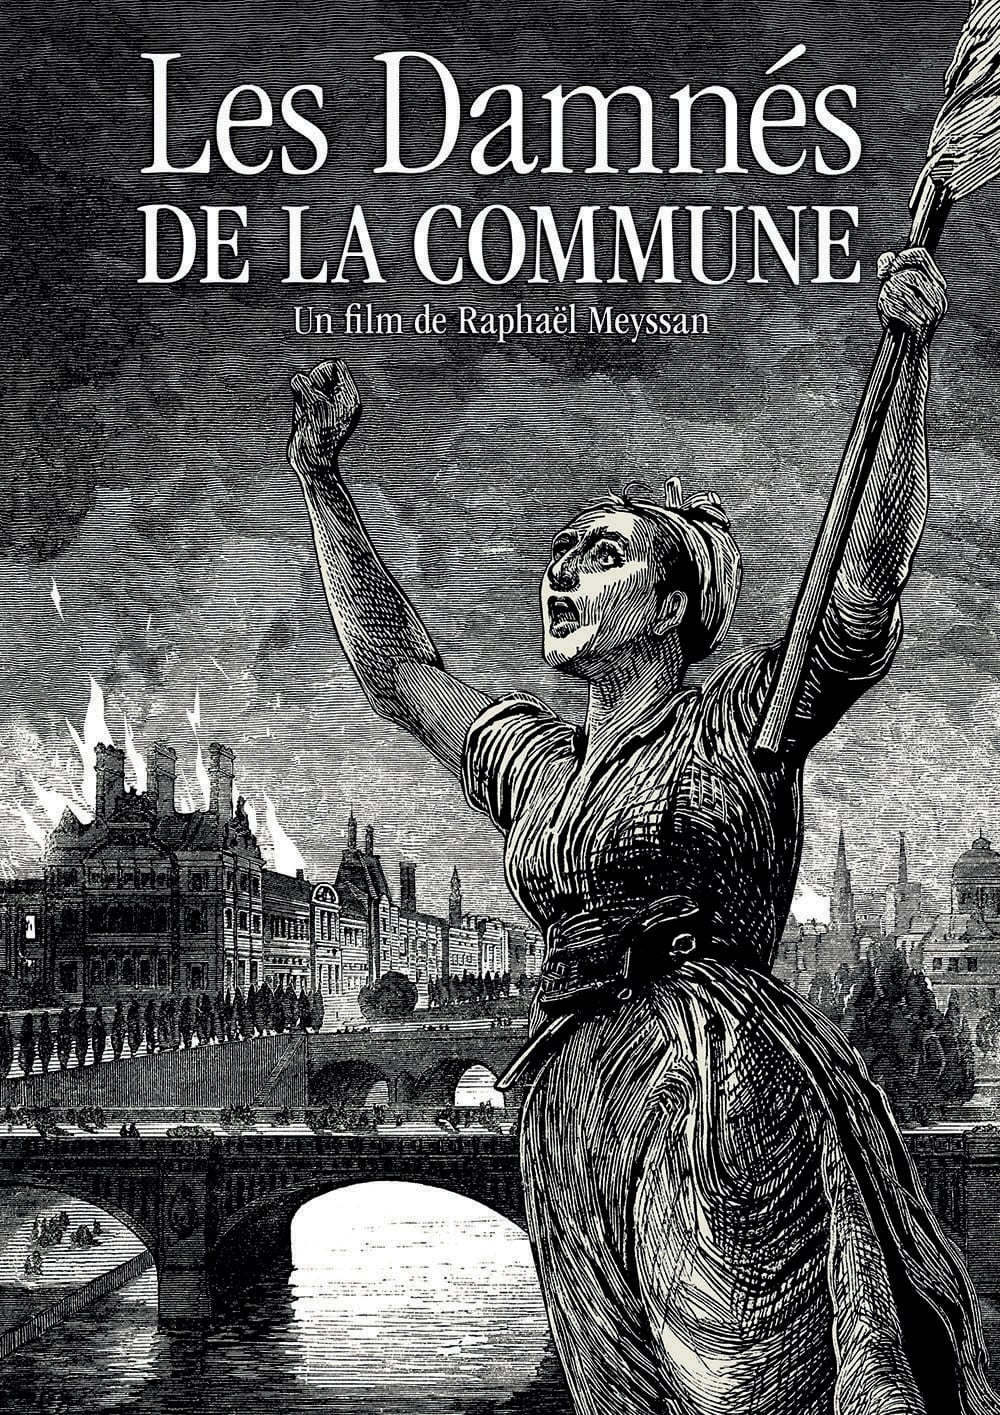 Les Damnés de la Commune